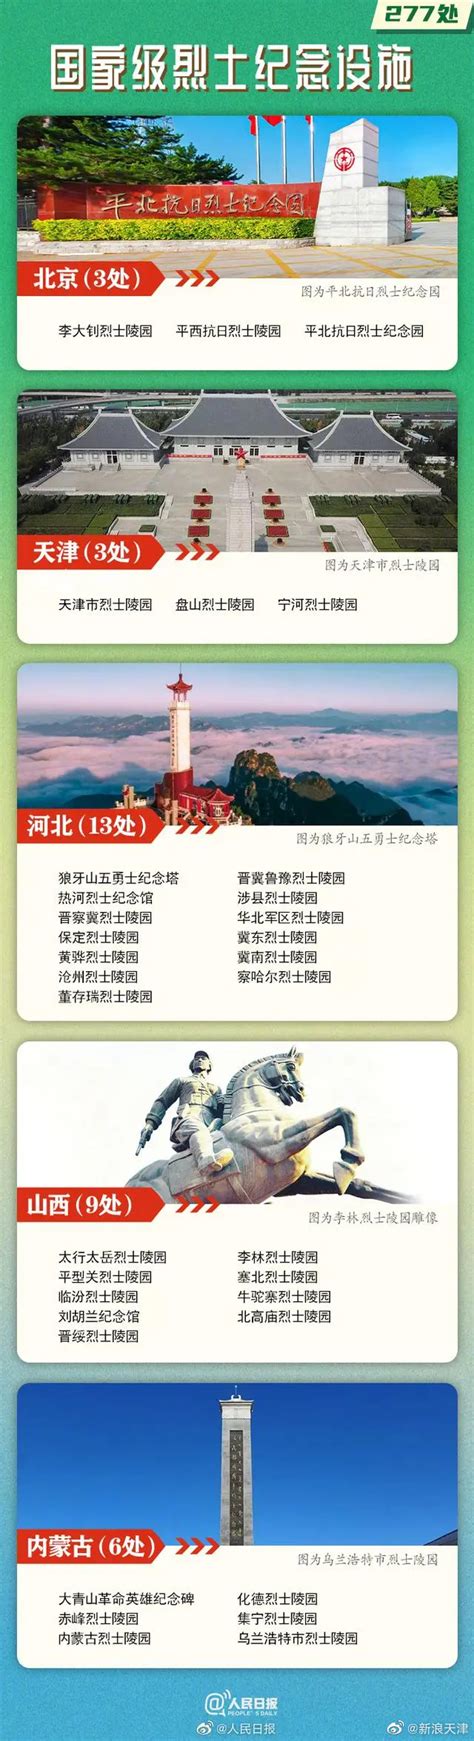 天津3处国家级烈士纪念设施名单公布